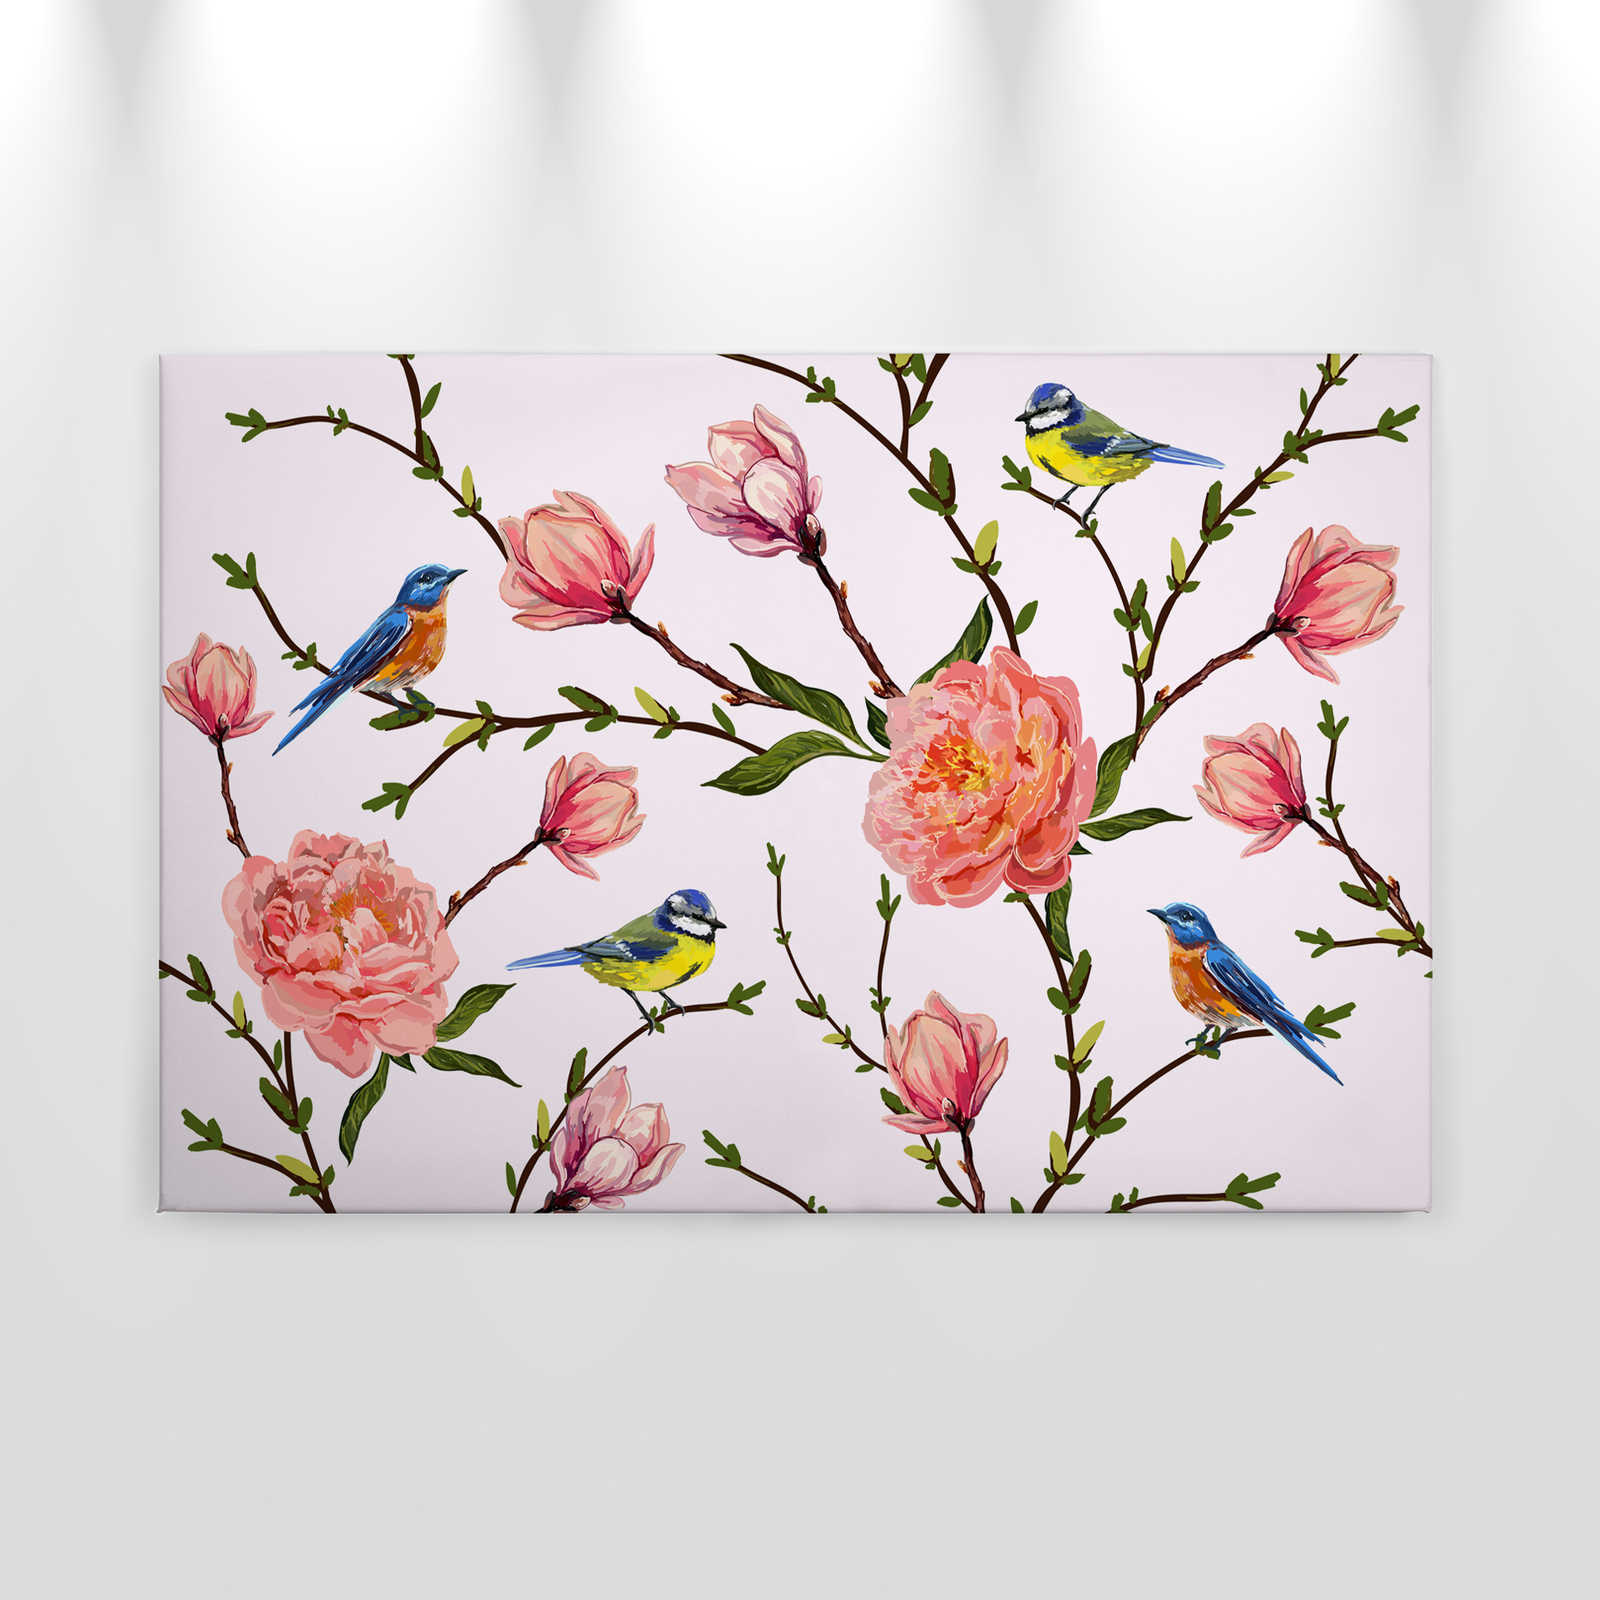             Tela Birds & Flowers minimalista - 0,90 m x 0,60 m
        